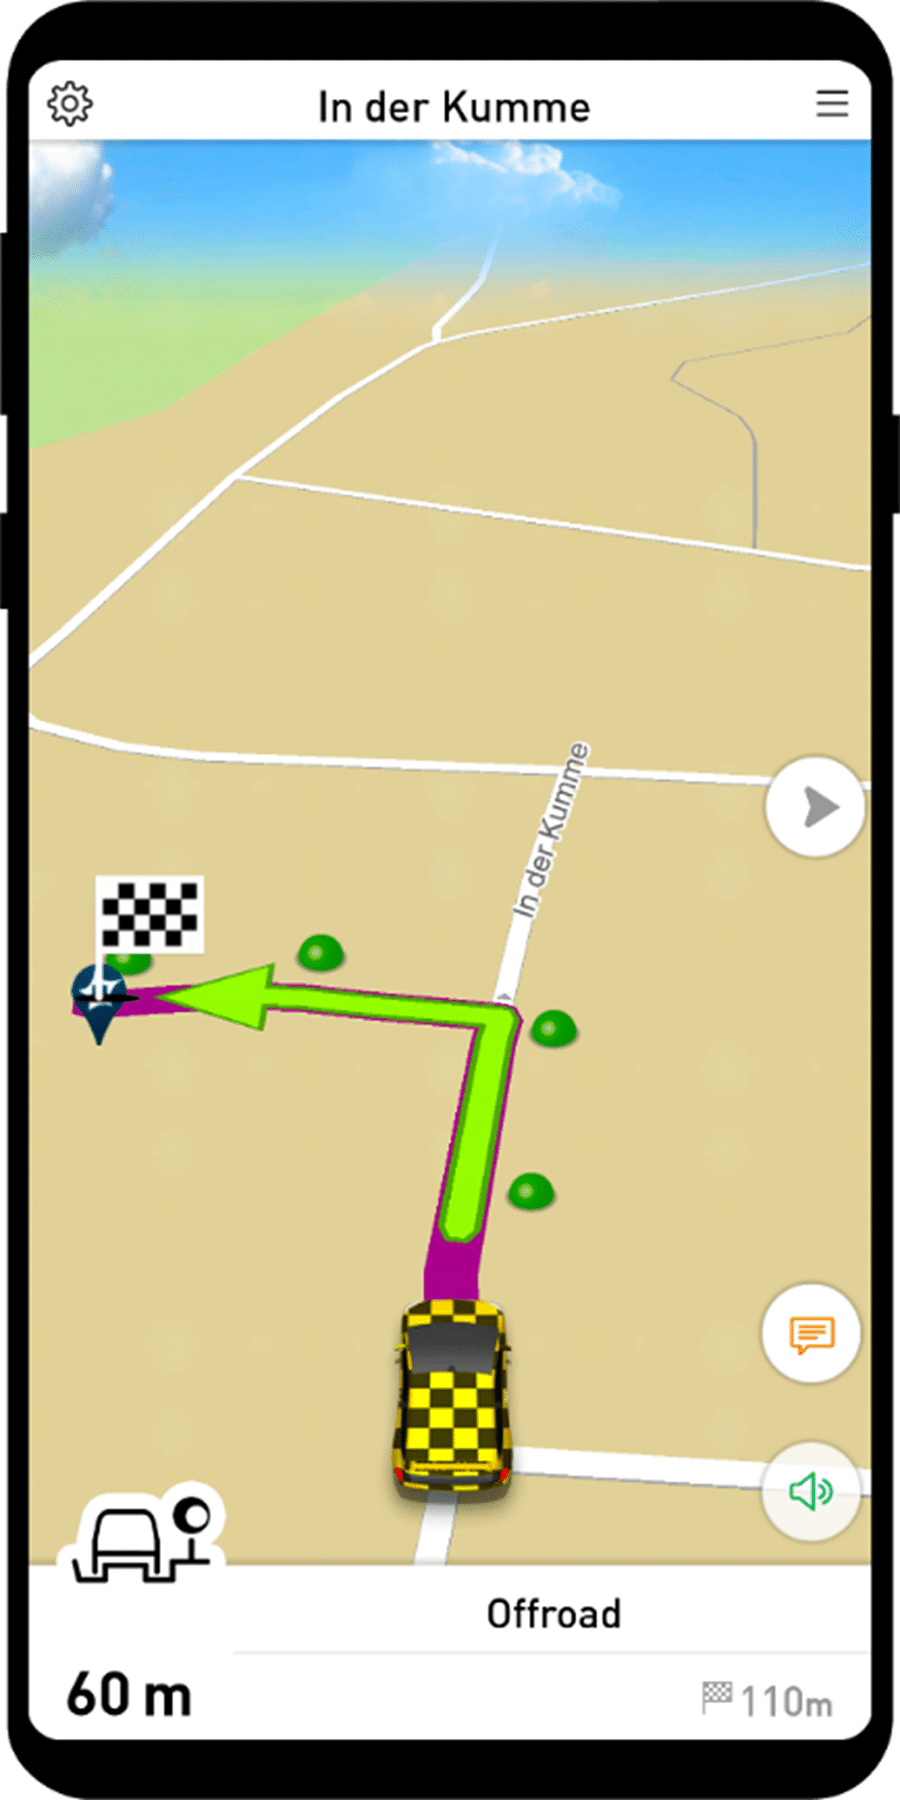 MapTrip Abfahren einer OffRoad Strecke - Spannende neue Partnerschaft mit Infoware für erstklassige Navigationslösungen!